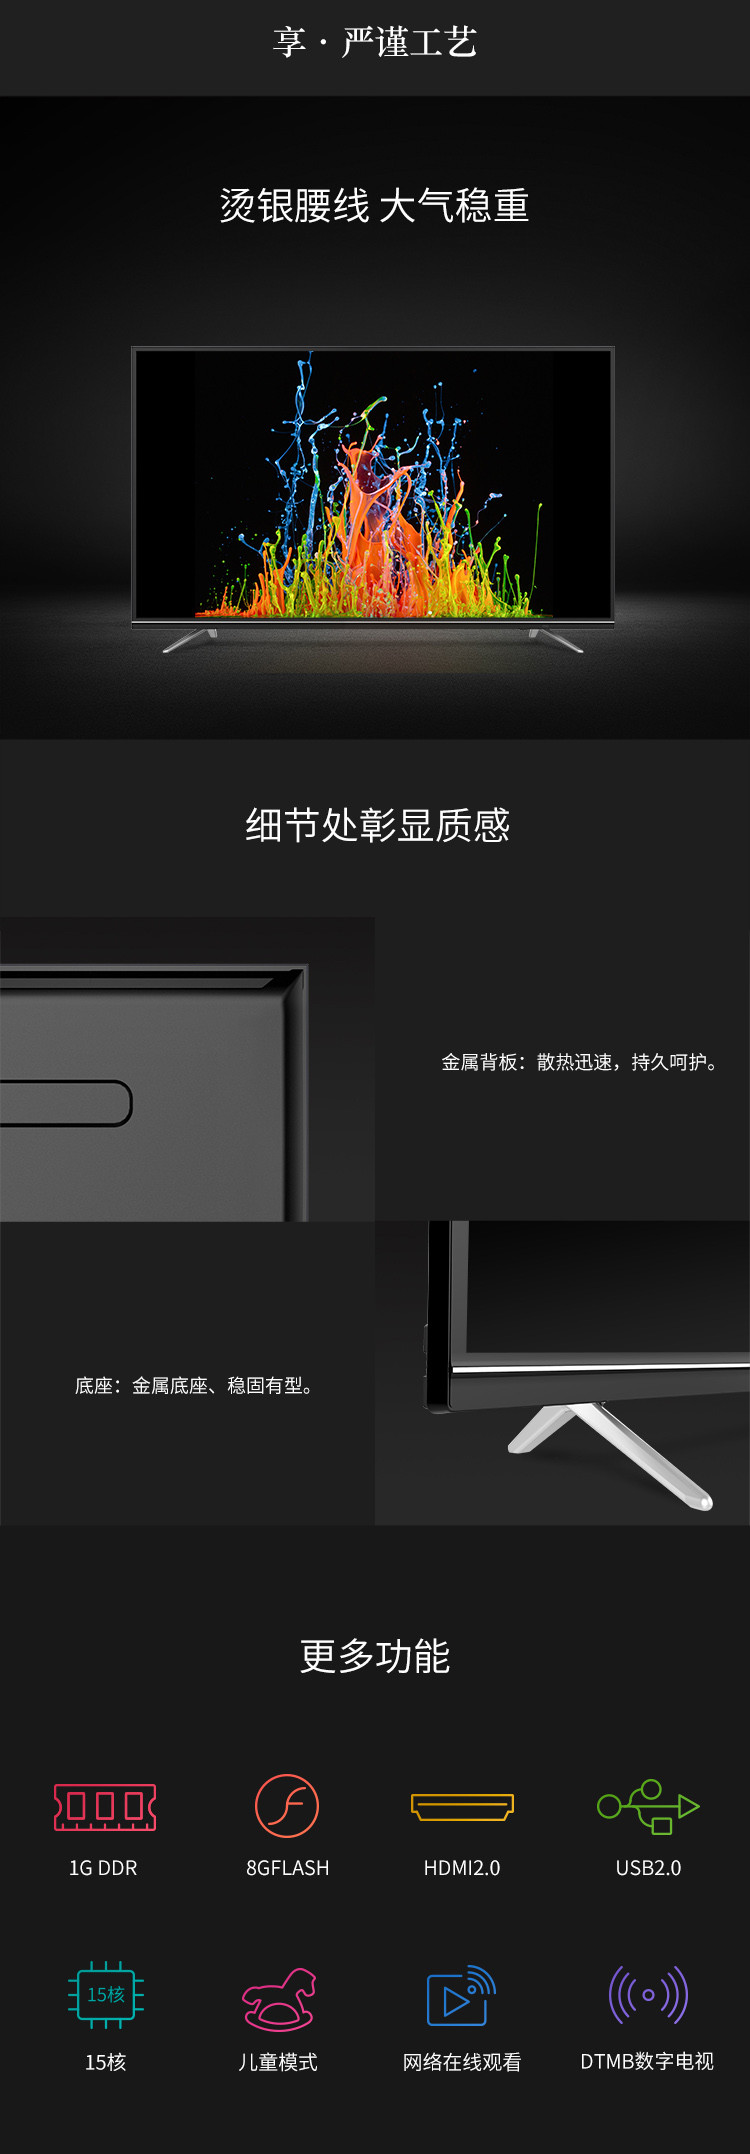 【湖南馆】创维50M9  50英寸人工智能HDR 4K超高清智能互联网液晶电视机(黑色)